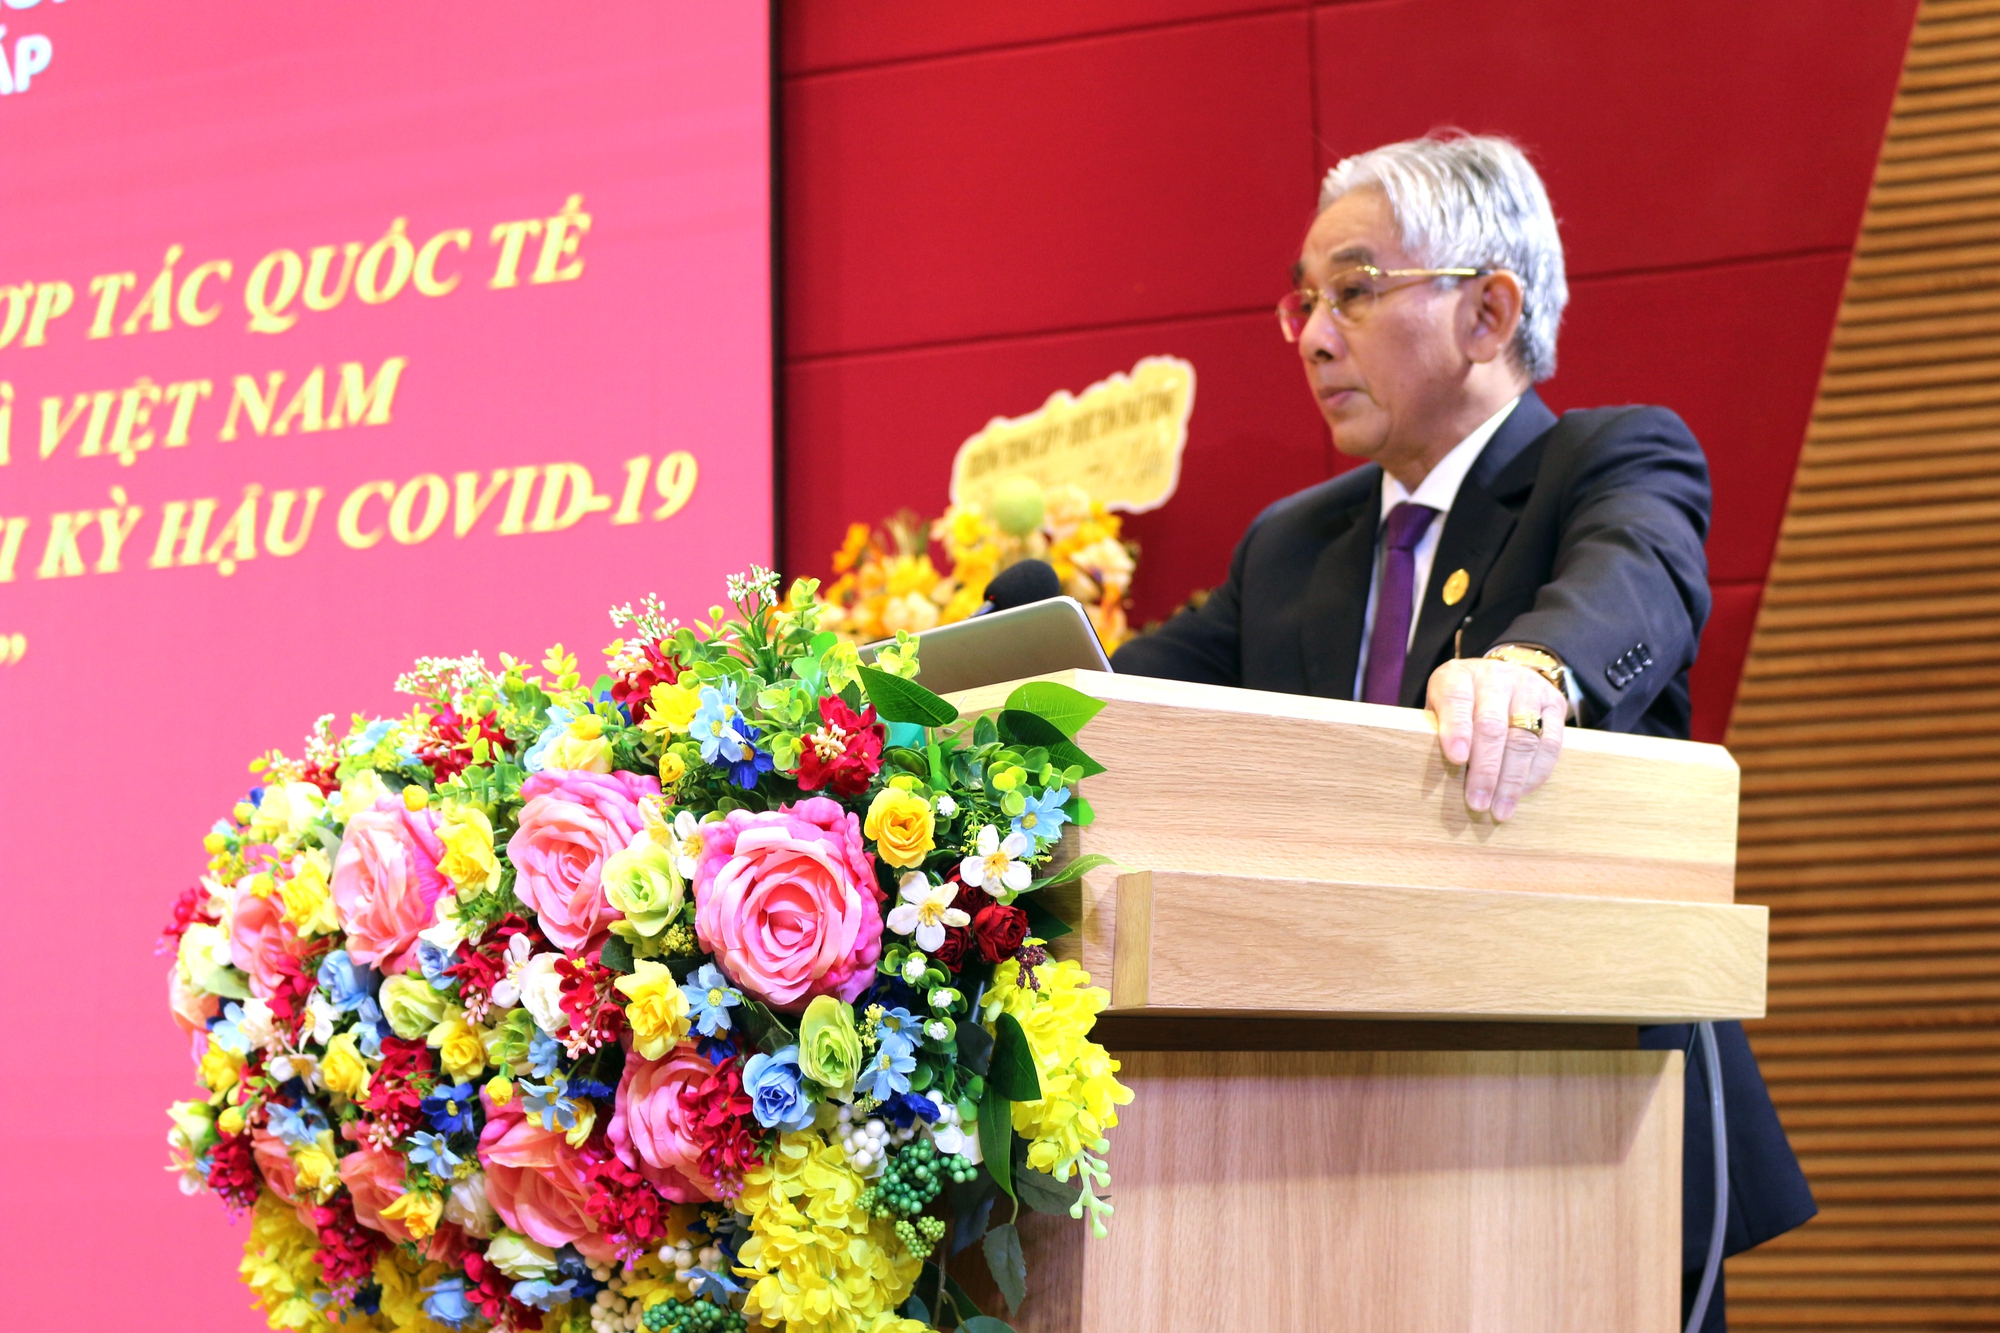 Hội thảo quốc tế về hậu COVID-19 diễn ra tại Trường ĐH Cửu Long- Ảnh 4.